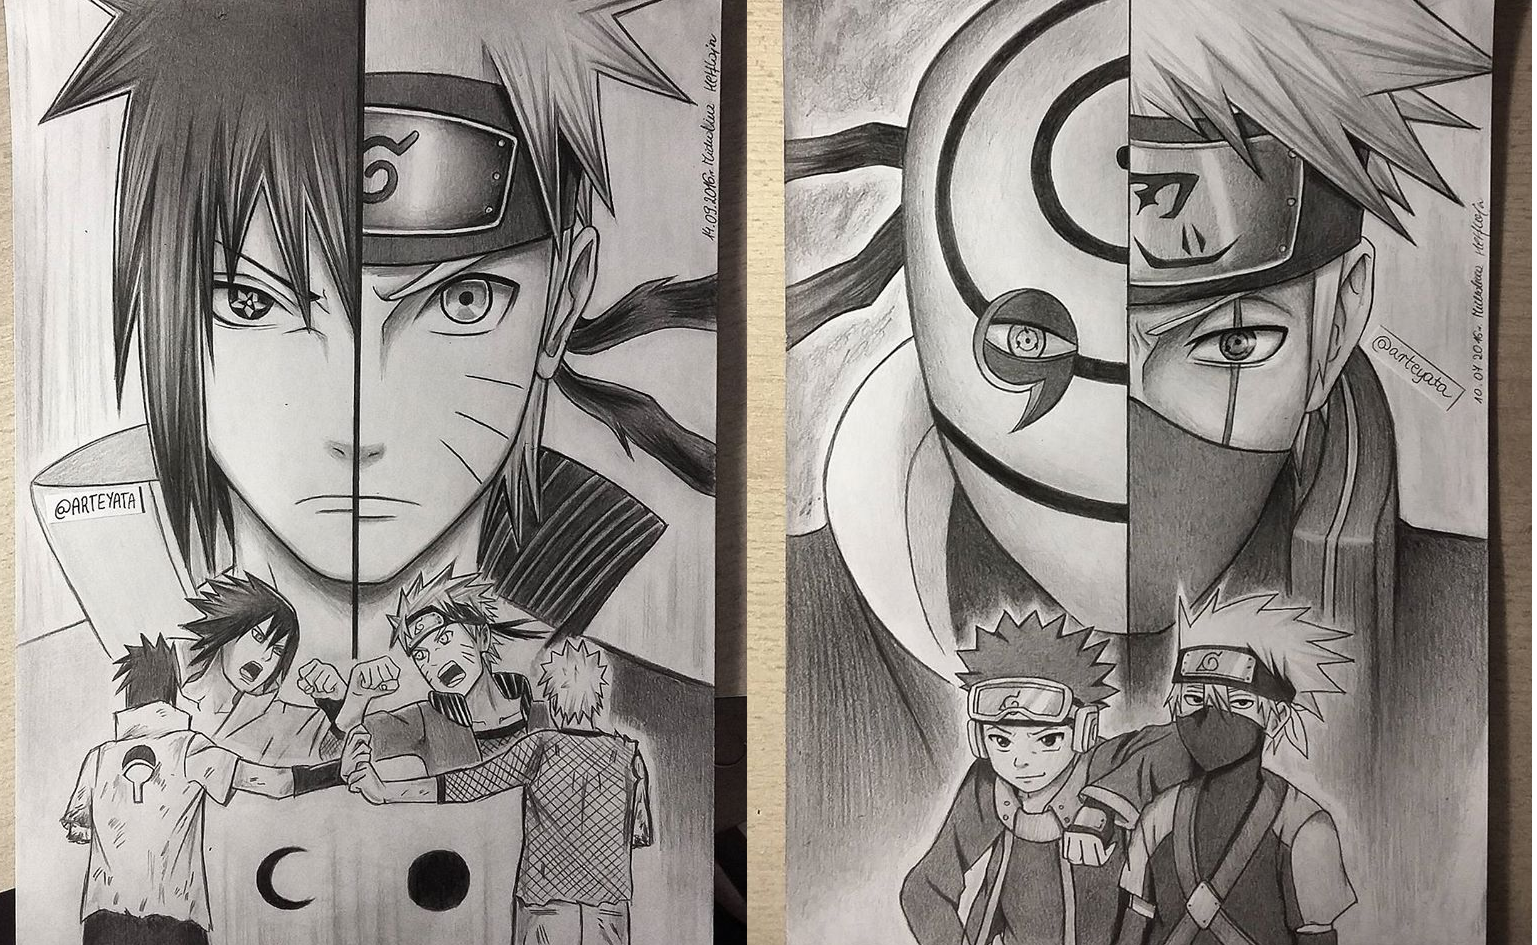 Fan art Naruto là những bức tranh minh họa được vẽ tay bởi các fan của bộ truyện tranh Naruto. Tranh tường, hình nền điện thoại hay tranh tô màu đều được yêu thích và truyền tải tình yêu vô bờ bến của fan cho bộ truyện này. Hãy xem hình liên quan để chiêm ngưỡng những bức tranh đầy tình cảm này.